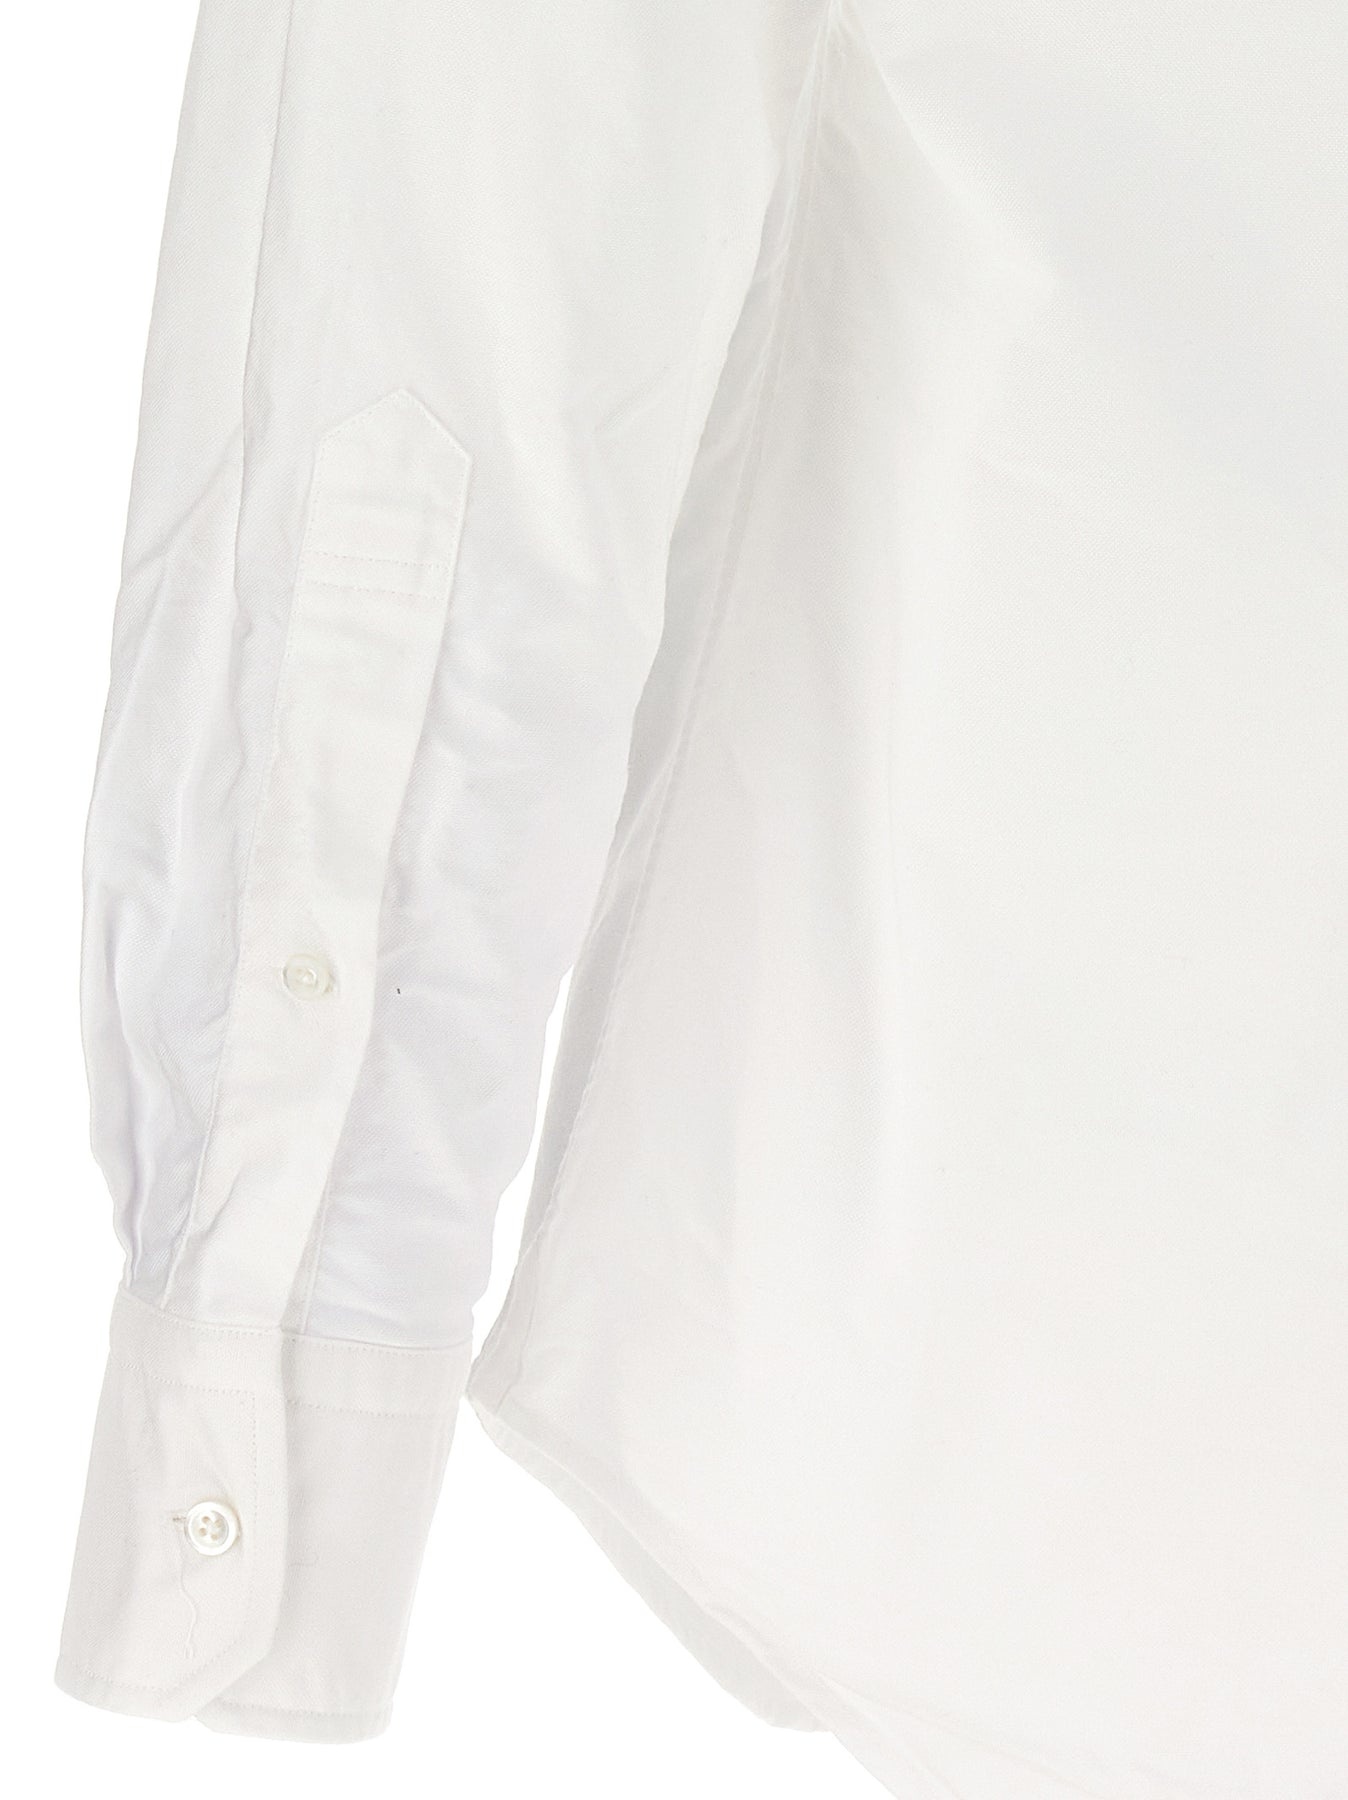 Rwb Shirt Shirt, Blouse White - 4